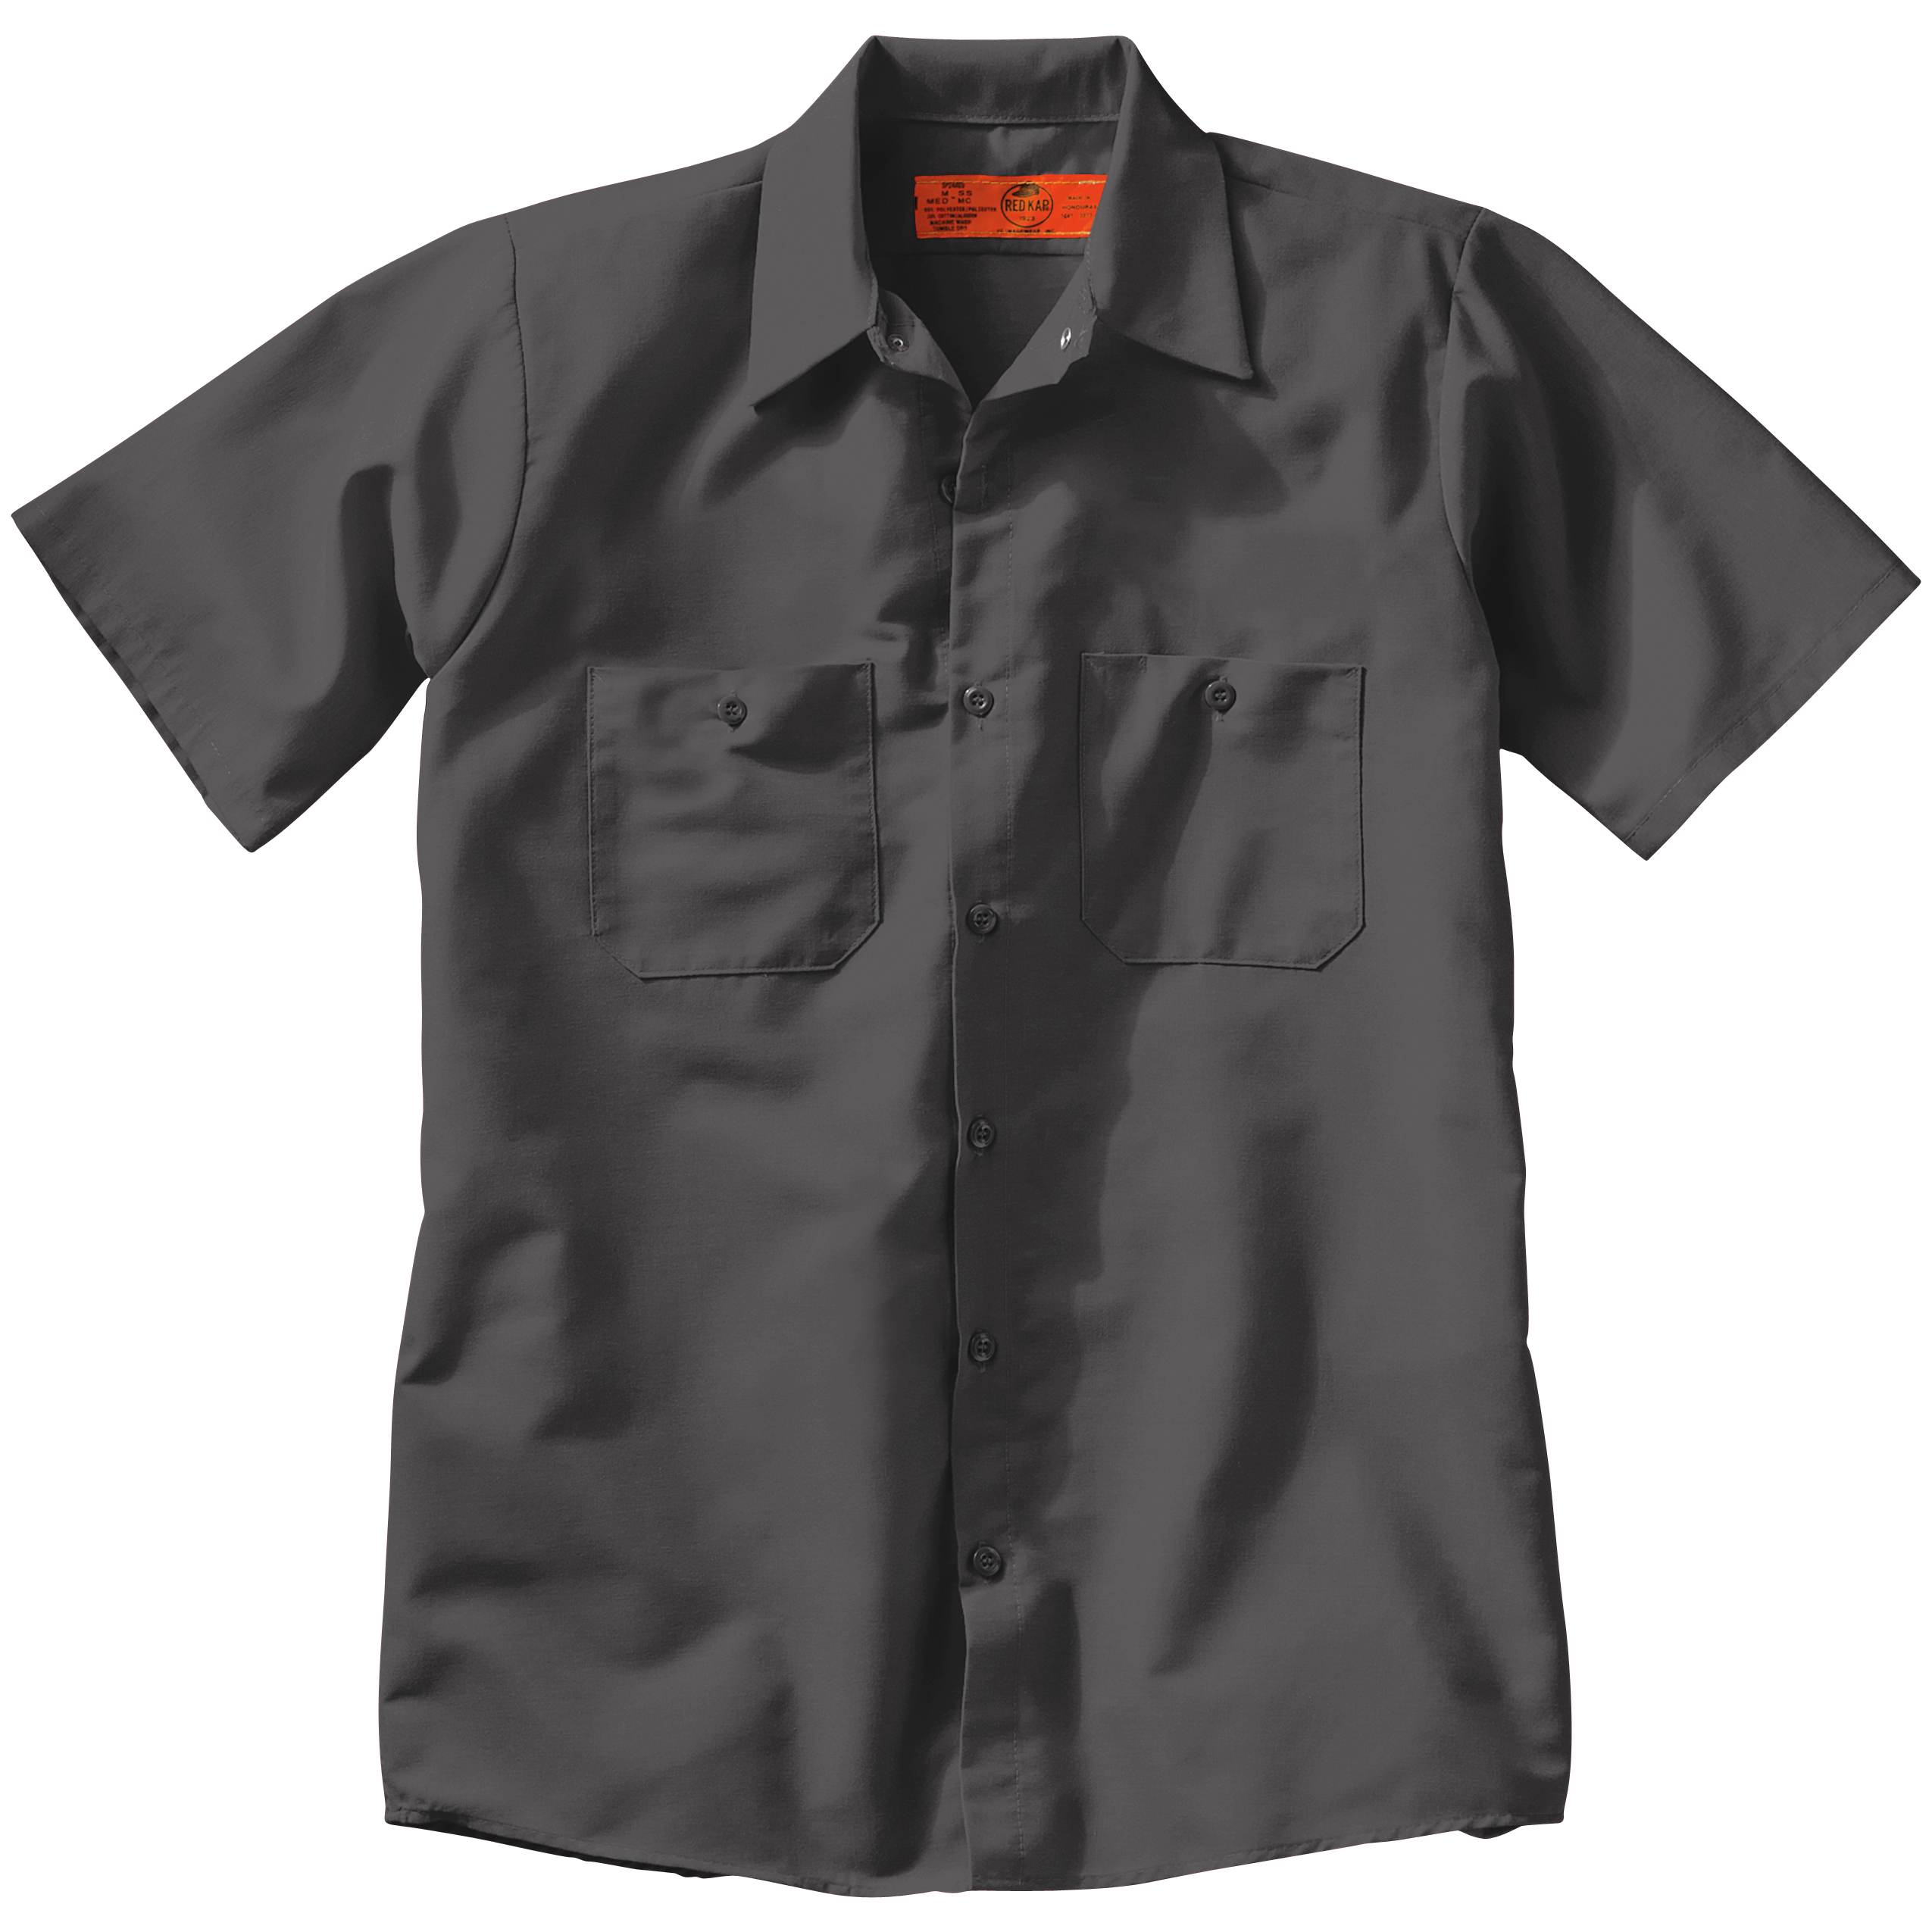 Red Kap Men's Industrial Work Shirt, Regular Fit, Long Sleeve, Light Grey,  Small